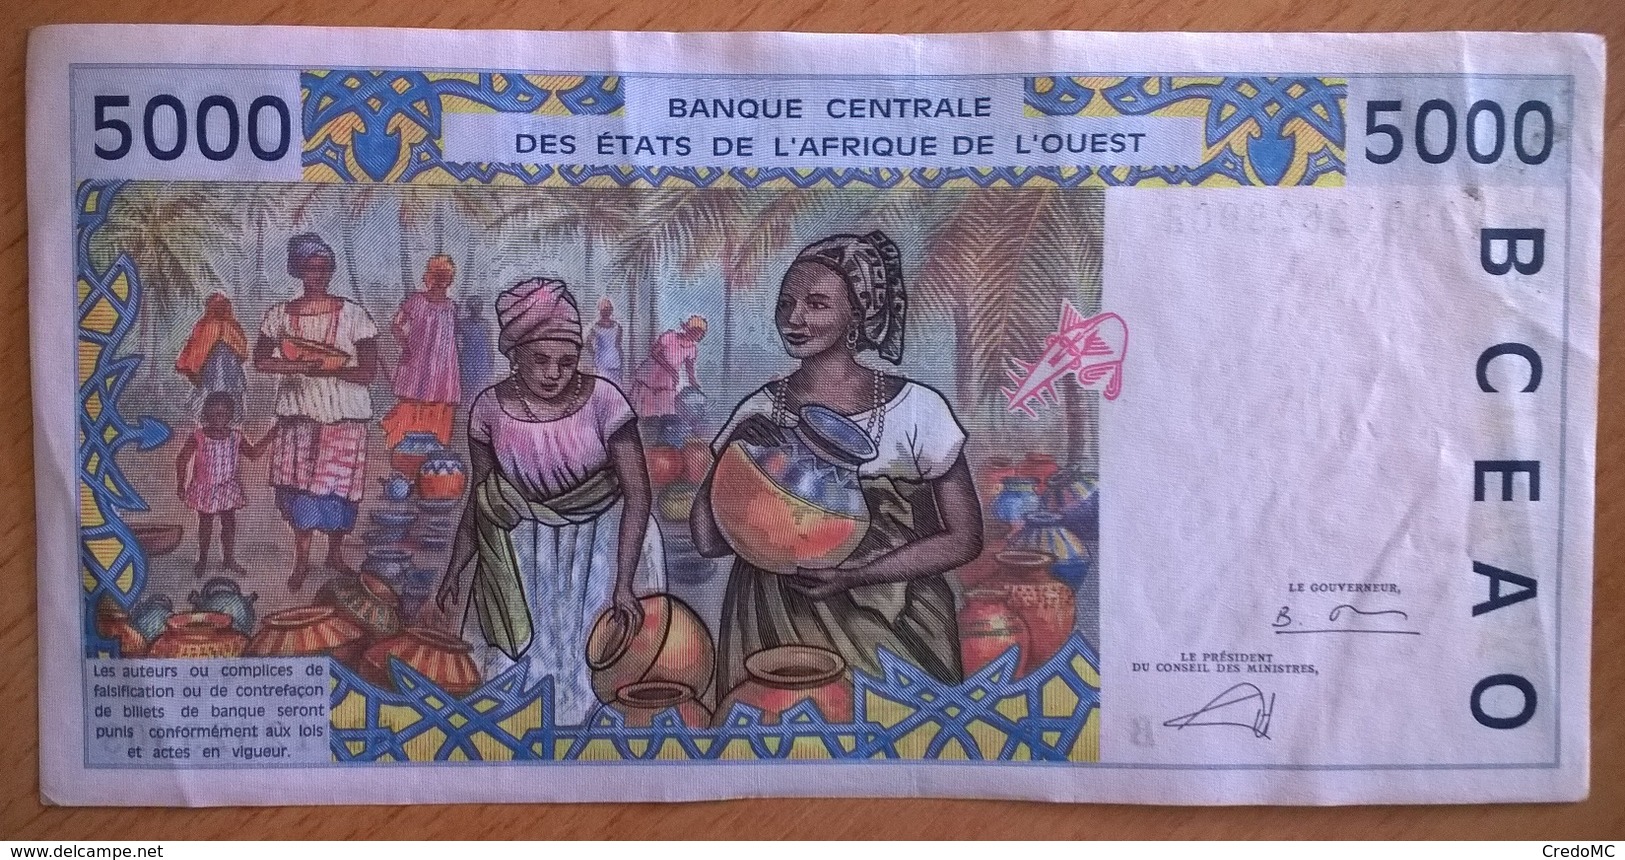 Bénin - 5000 Francs - 2003 - PICK 213 Bm - SUP - États D'Afrique De L'Ouest